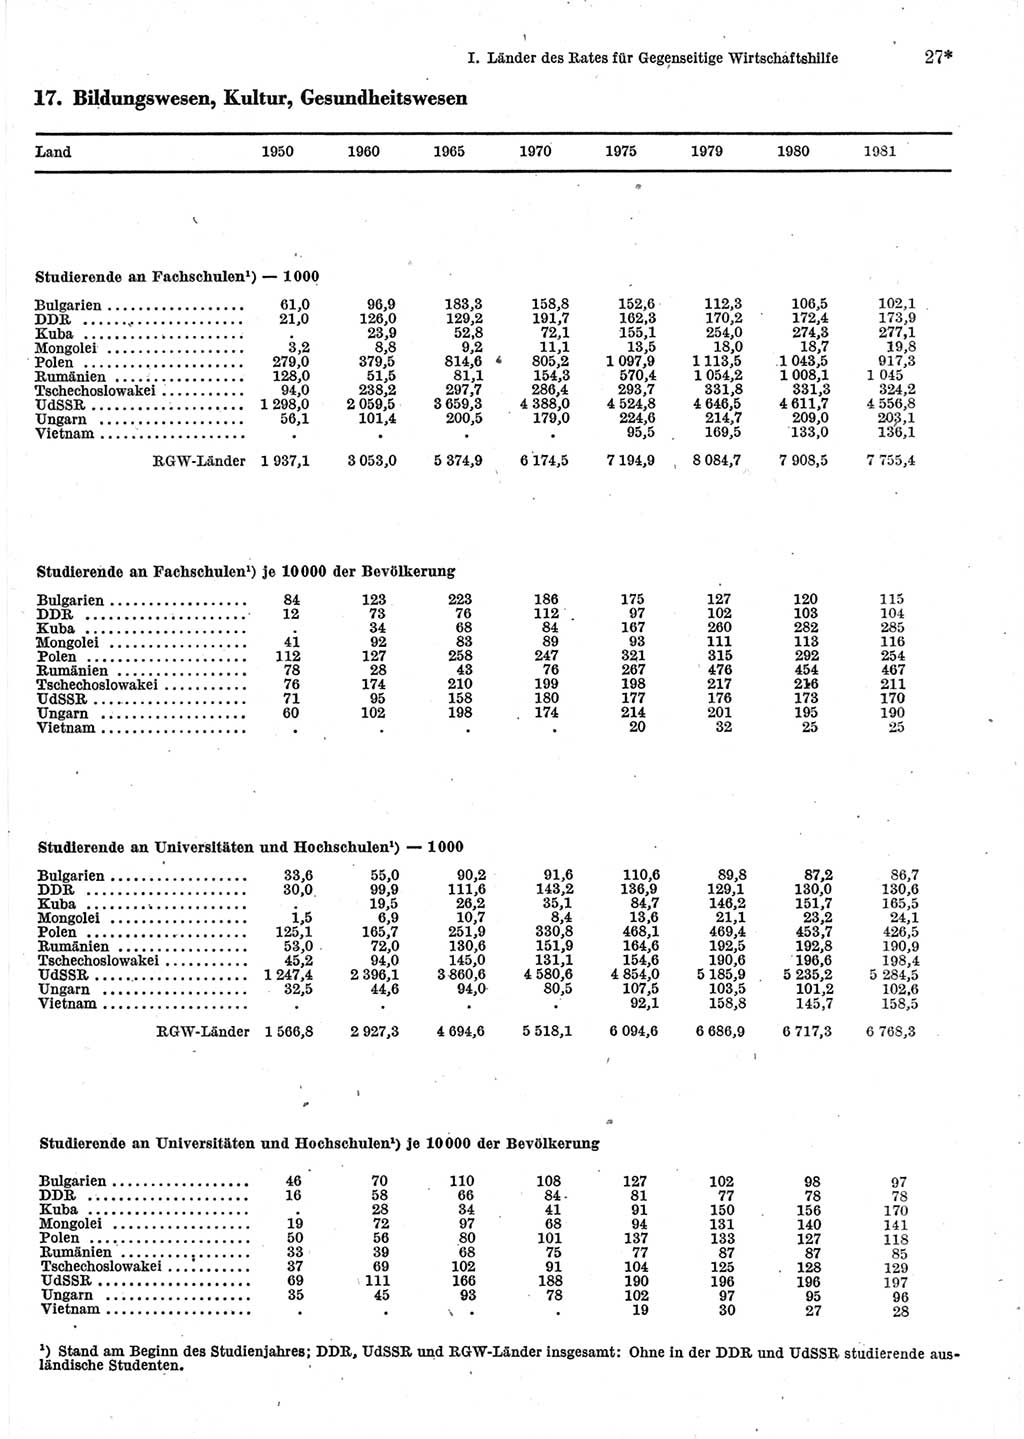 Statistisches Jahrbuch der Deutschen Demokratischen Republik (DDR) 1983, Seite 27 (Stat. Jb. DDR 1983, S. 27)